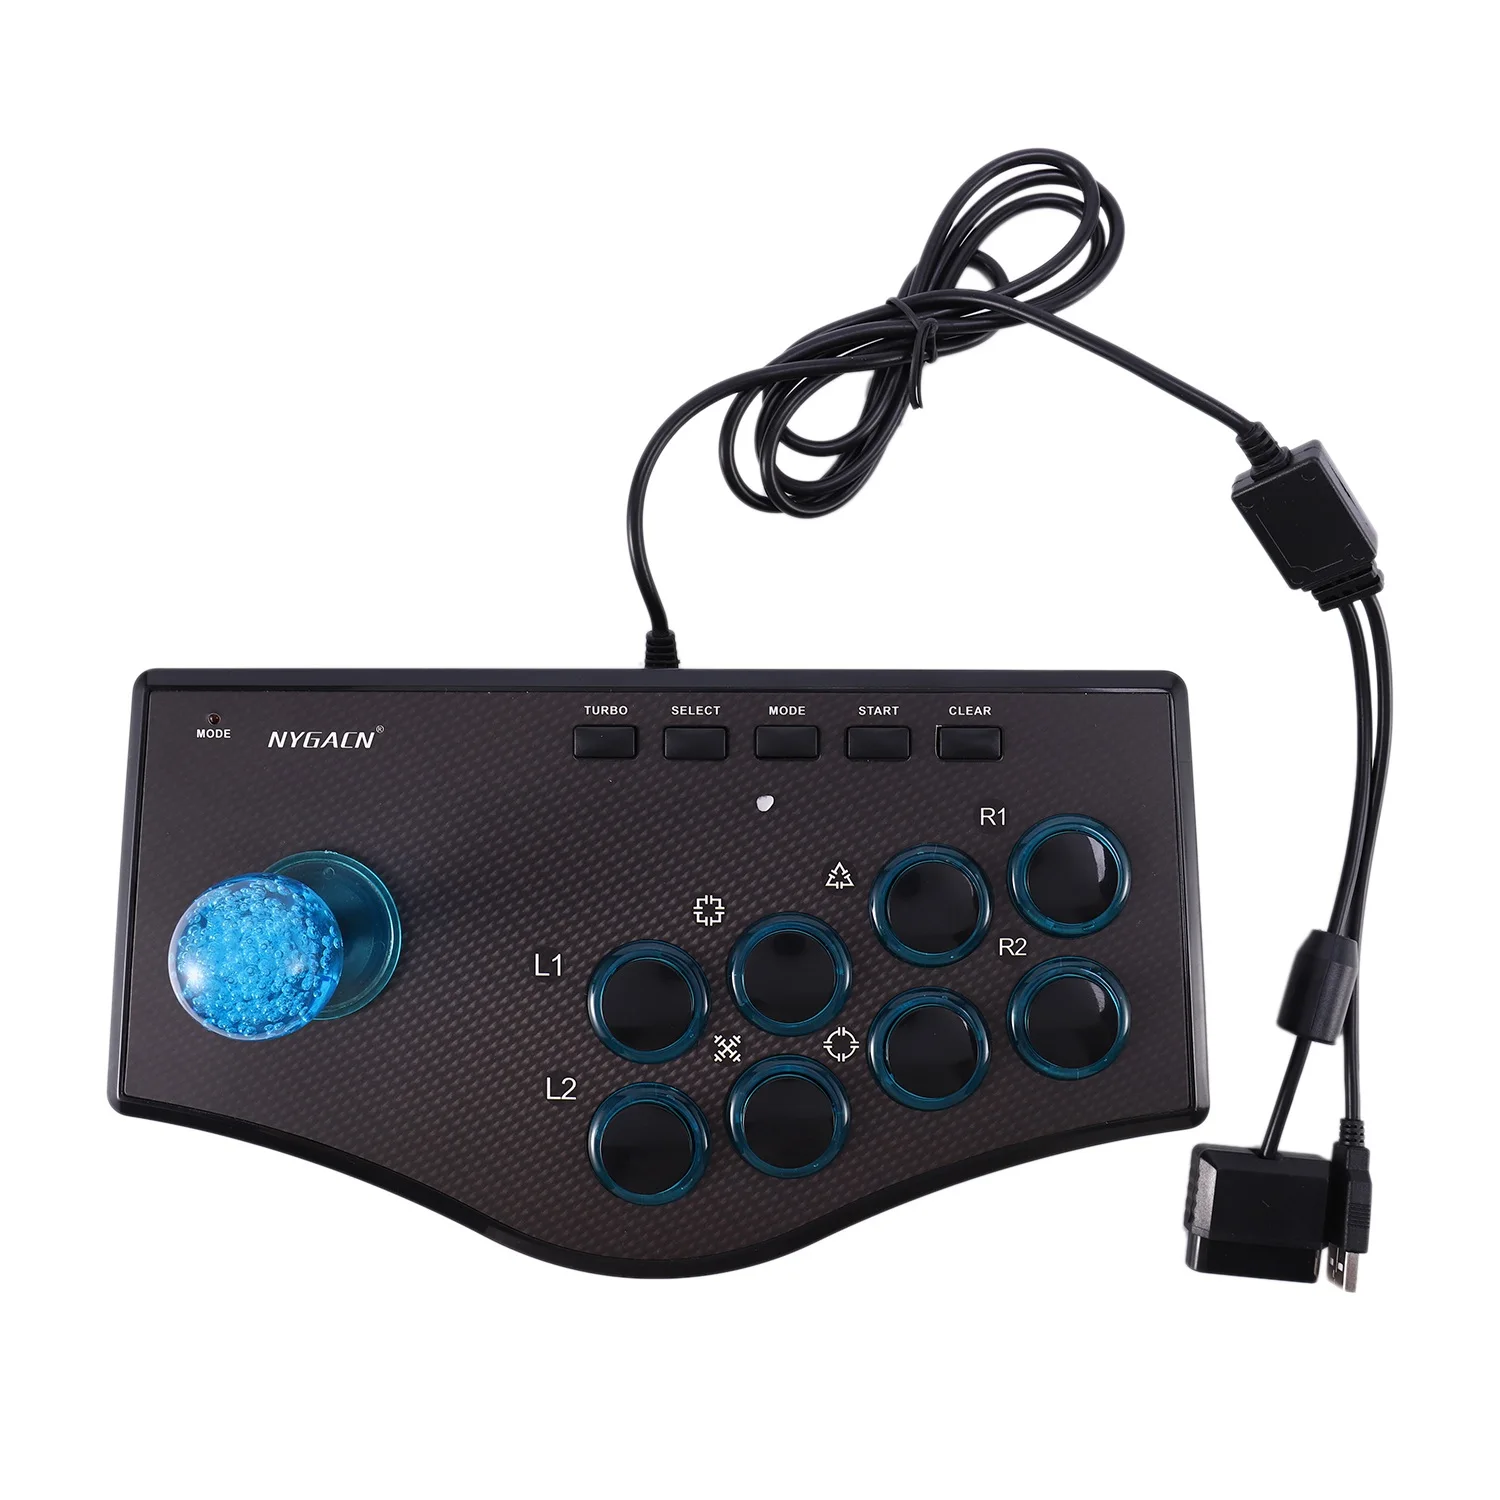 

Ретро-контроллер для аркадных игр, Usb-джойстик для Ps2/Ps3/ПК/Android Smart Tv, встроенный вибратор, восемь направлений